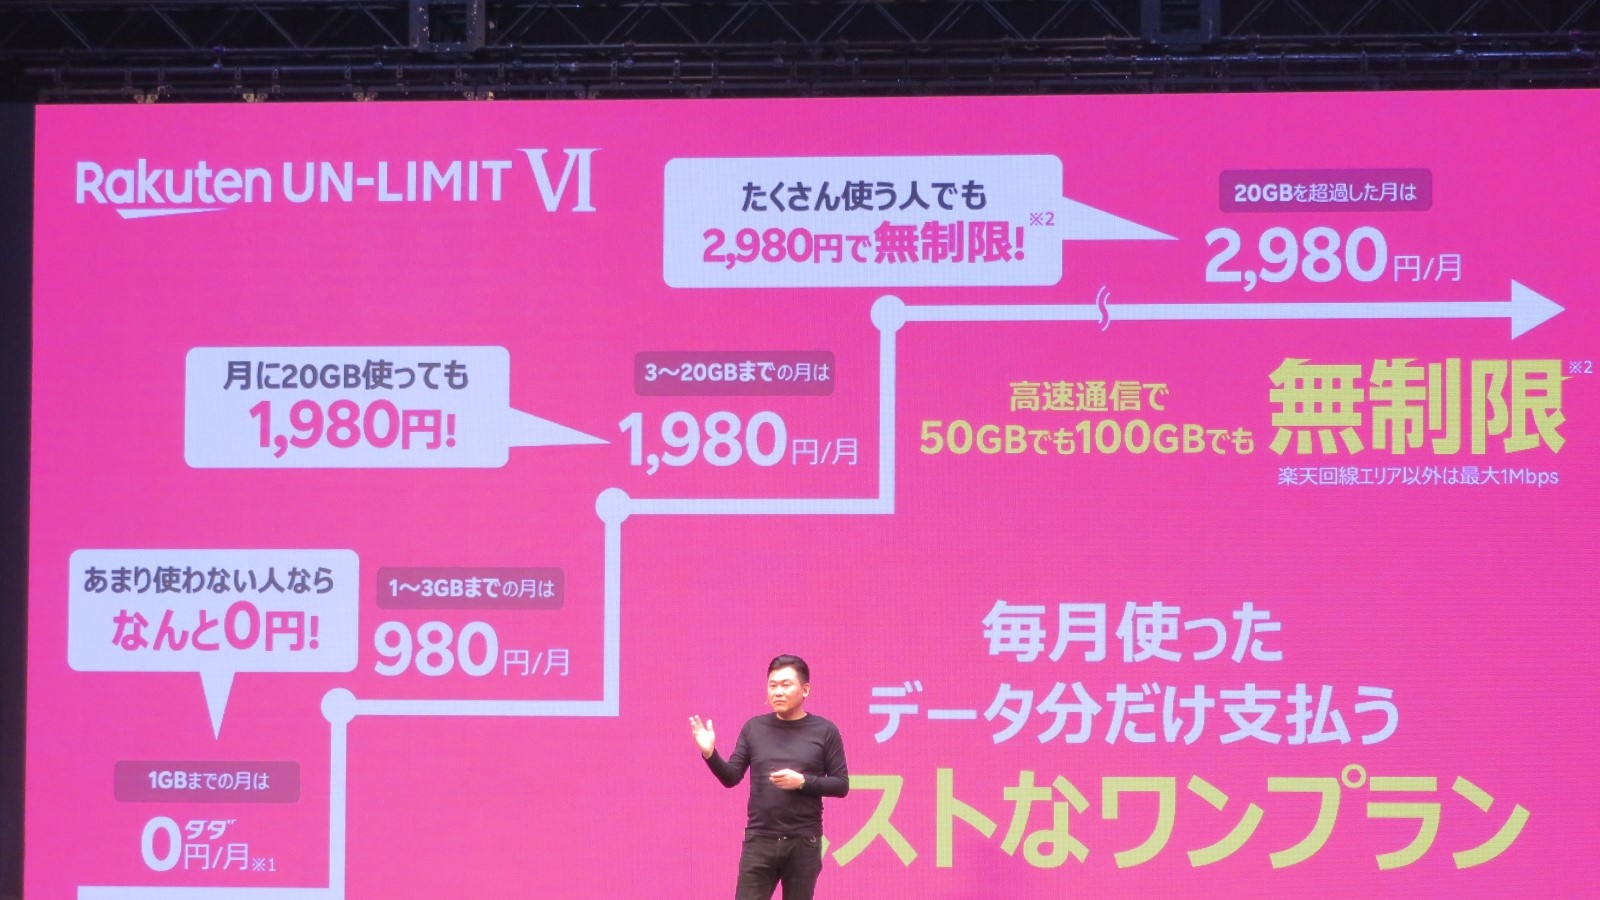 楽天モバイルの新料金プラン「Rakuten UN-LIMIT VI」を発表する三木谷浩史会長兼CEO（最高経営責任者）